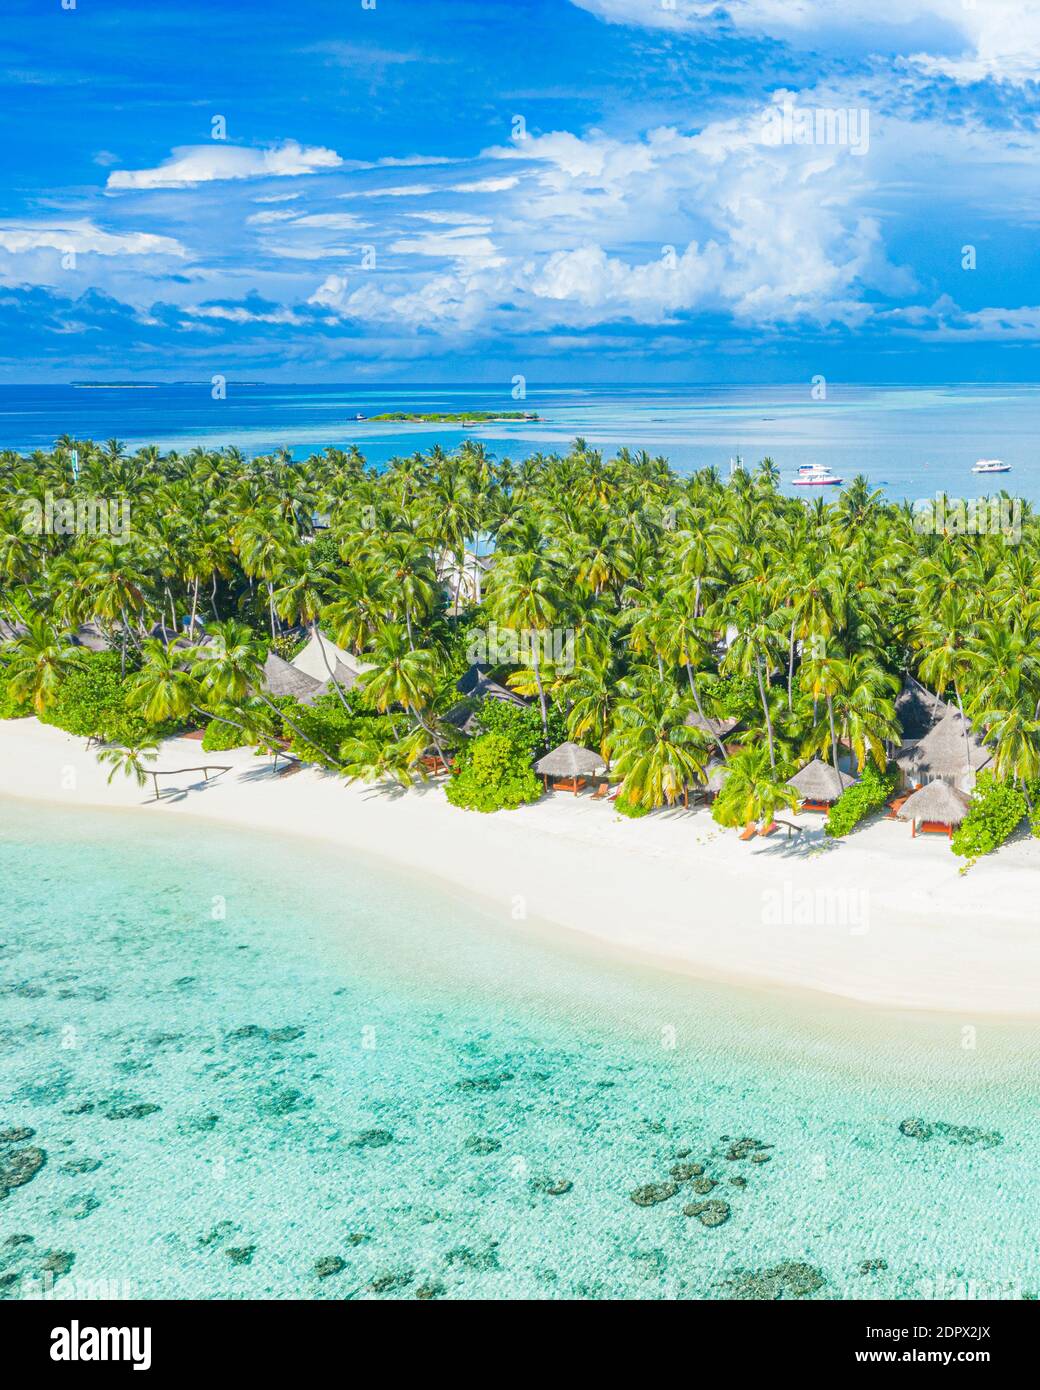 Foto aerea della bellissima spiaggia tropicale paradiso Maldive. Vista incredibile, acque turchesi blu della laguna, palme e spiaggia di sabbia bianca. Viaggi di lusso Foto Stock